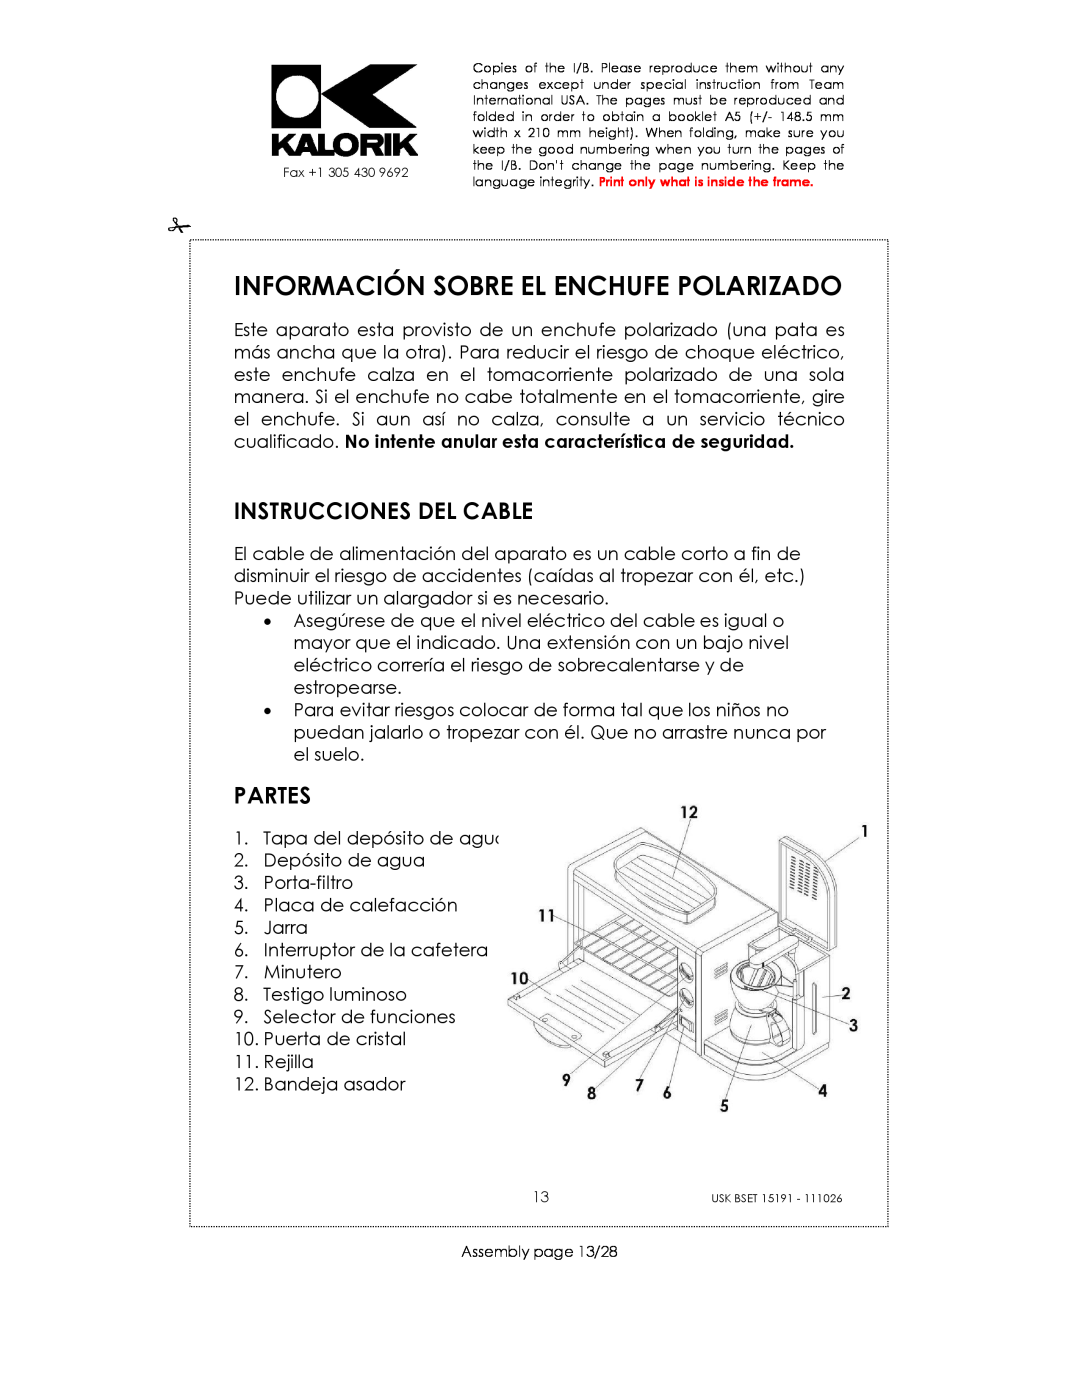 Kalorik USK BSET 15191 manual Información Sobre El Enchufe Polarizado, Instrucciones Del Cable, Partes 